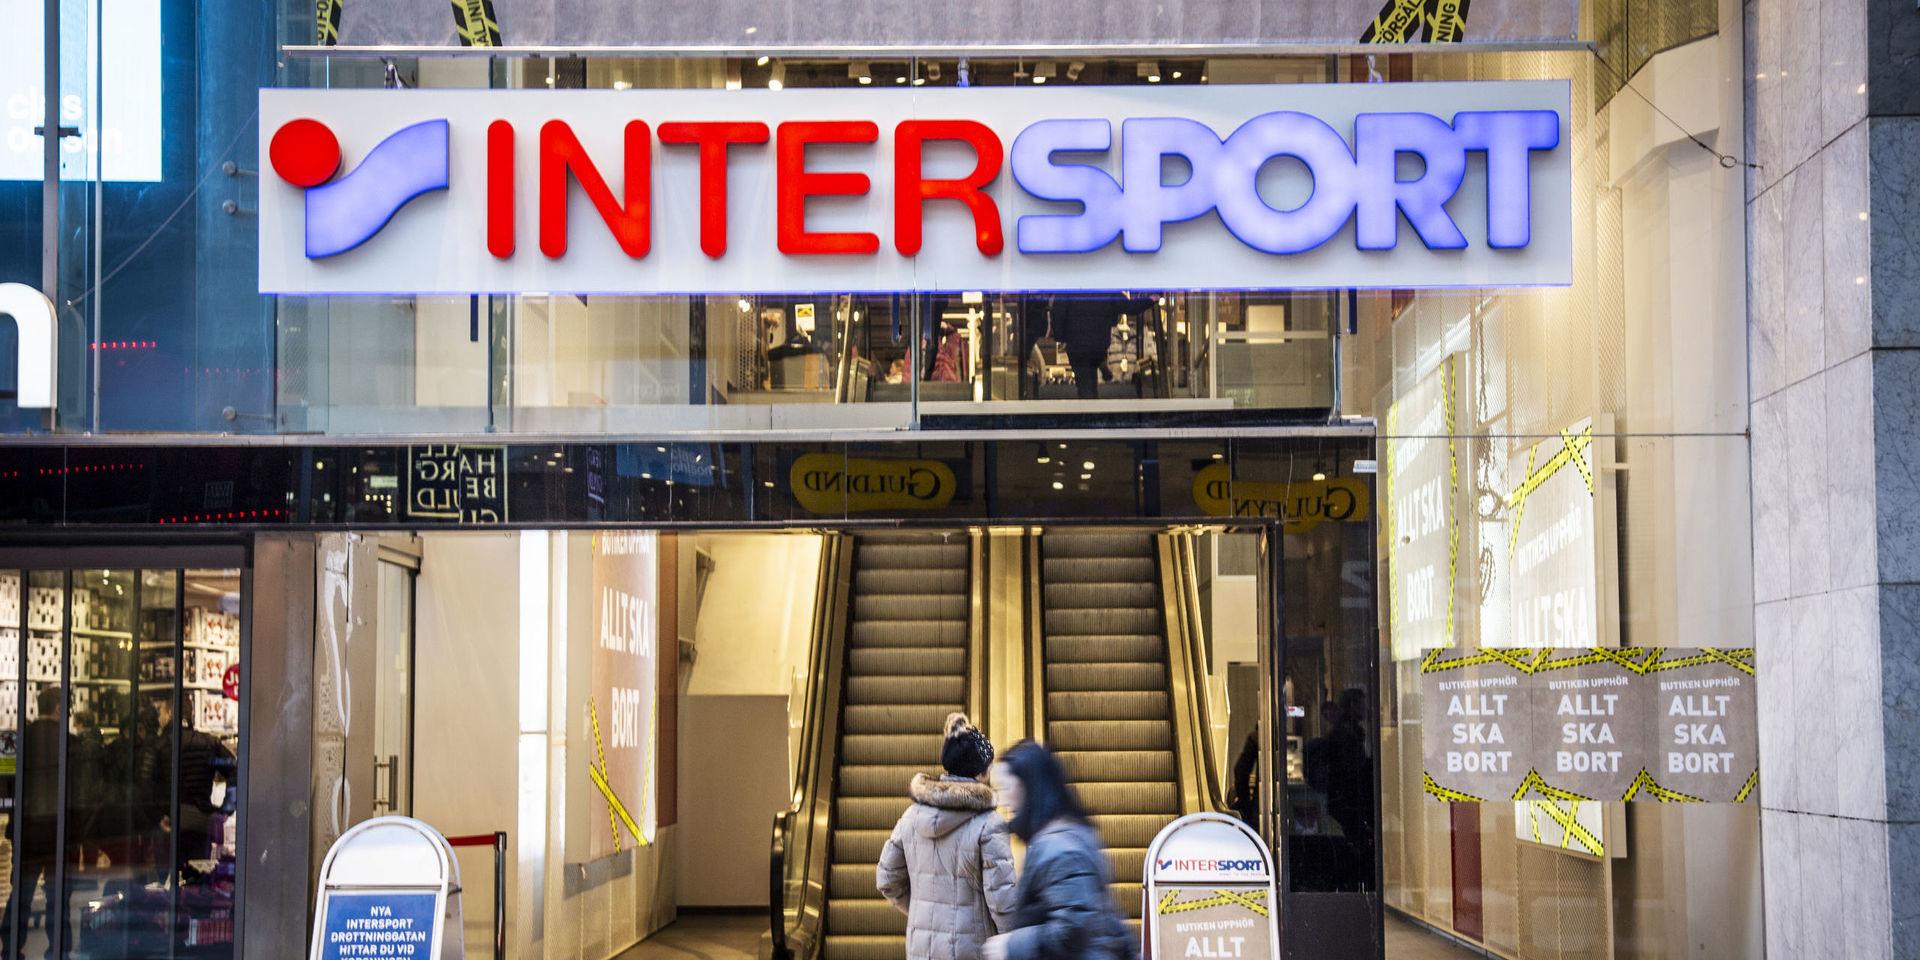 Sportkedjan Intersport, som har huvudkontor i Göteborg, ansöker om företagsrekonstruktion efter att försäljningen dalat efter coronapandemin.